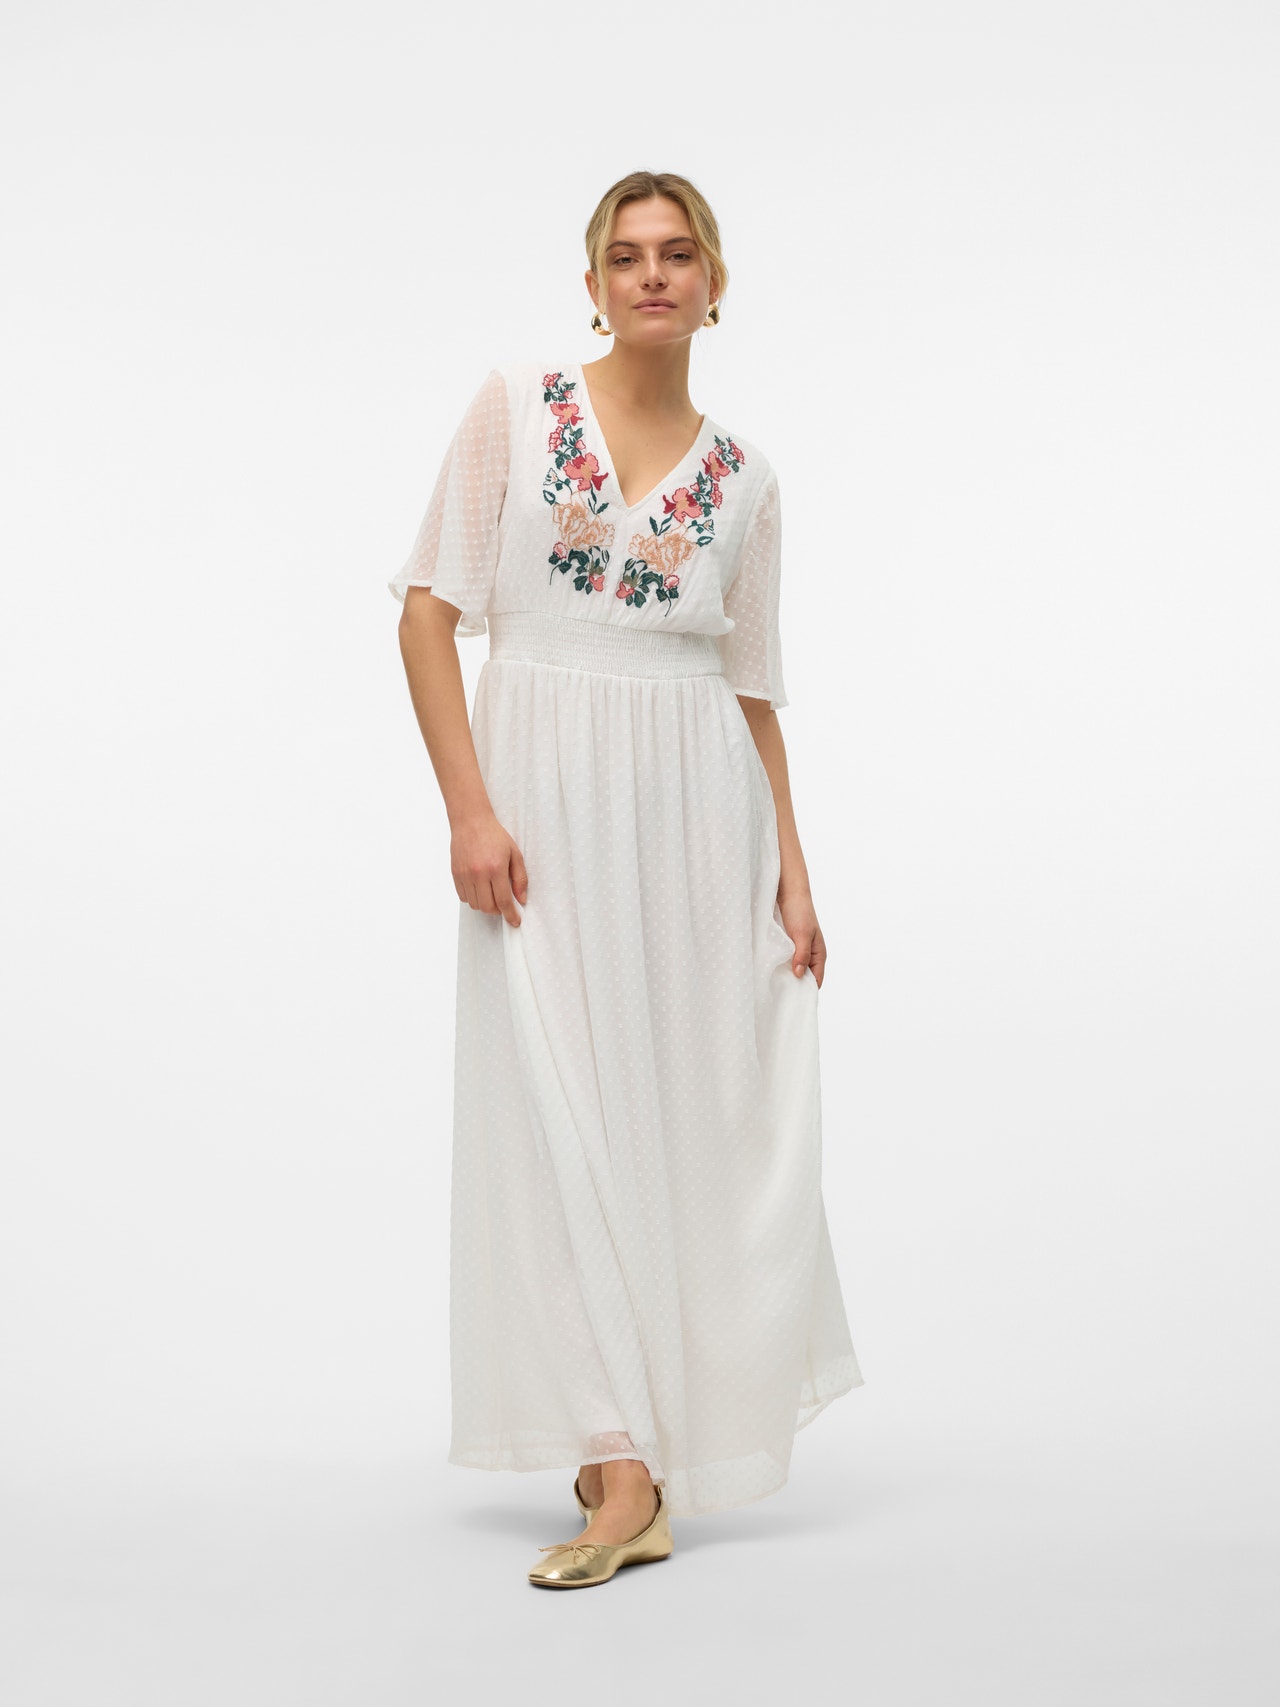 Vero Moda VMDAISEY Długa sukienka -Bright White - 10320372